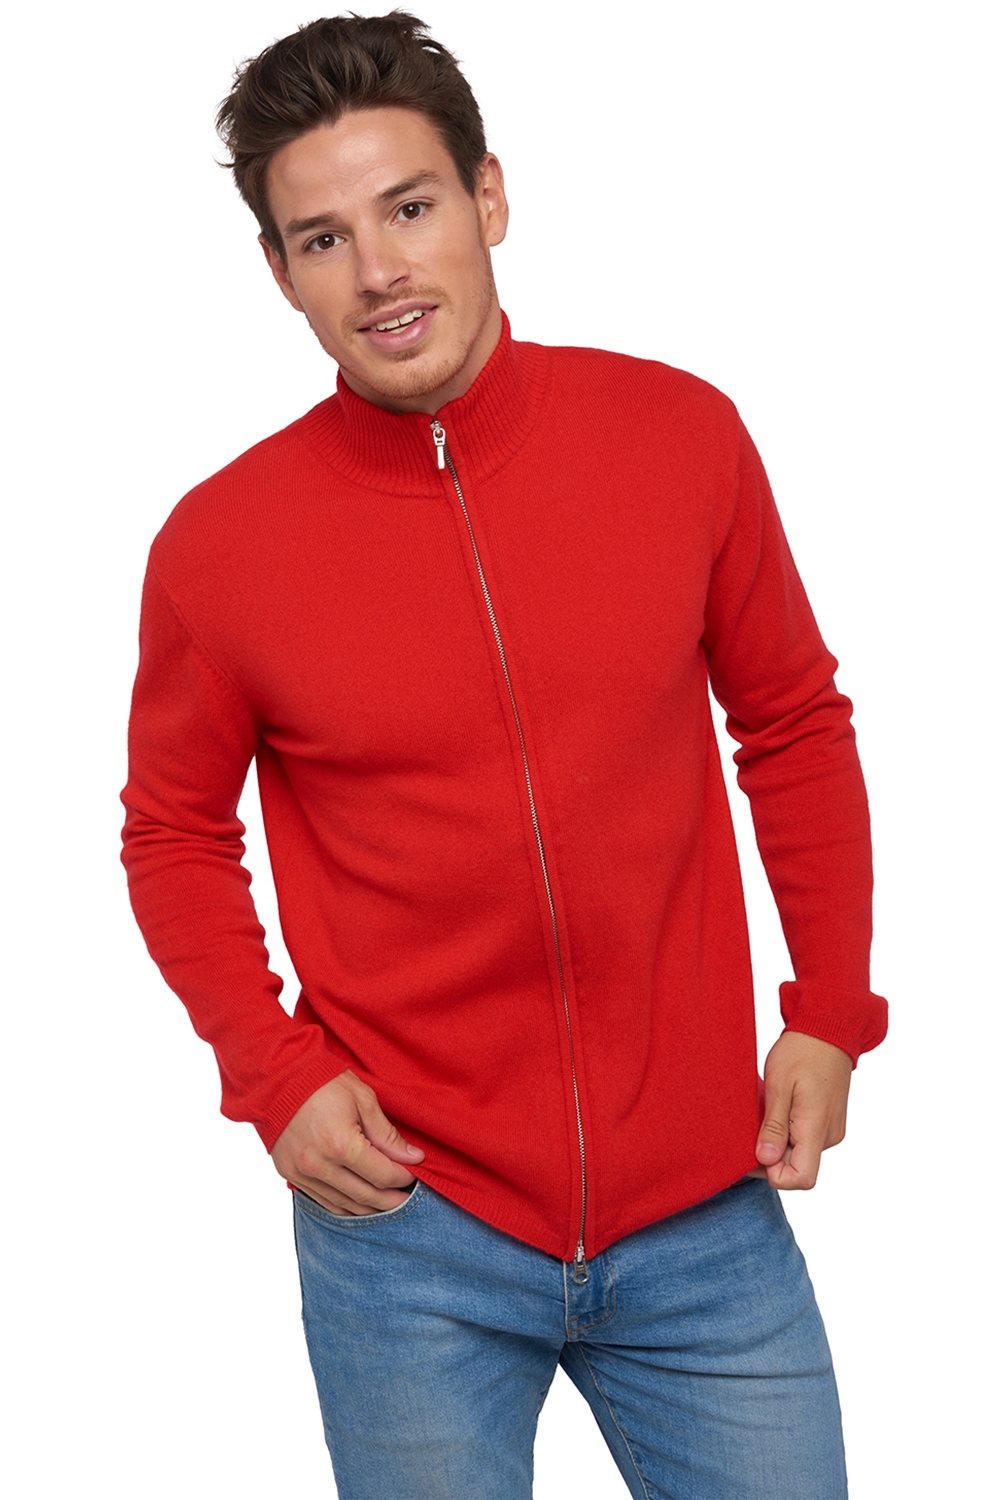 Cashmere men waistcoat sleeveless sweaters elton rouge m